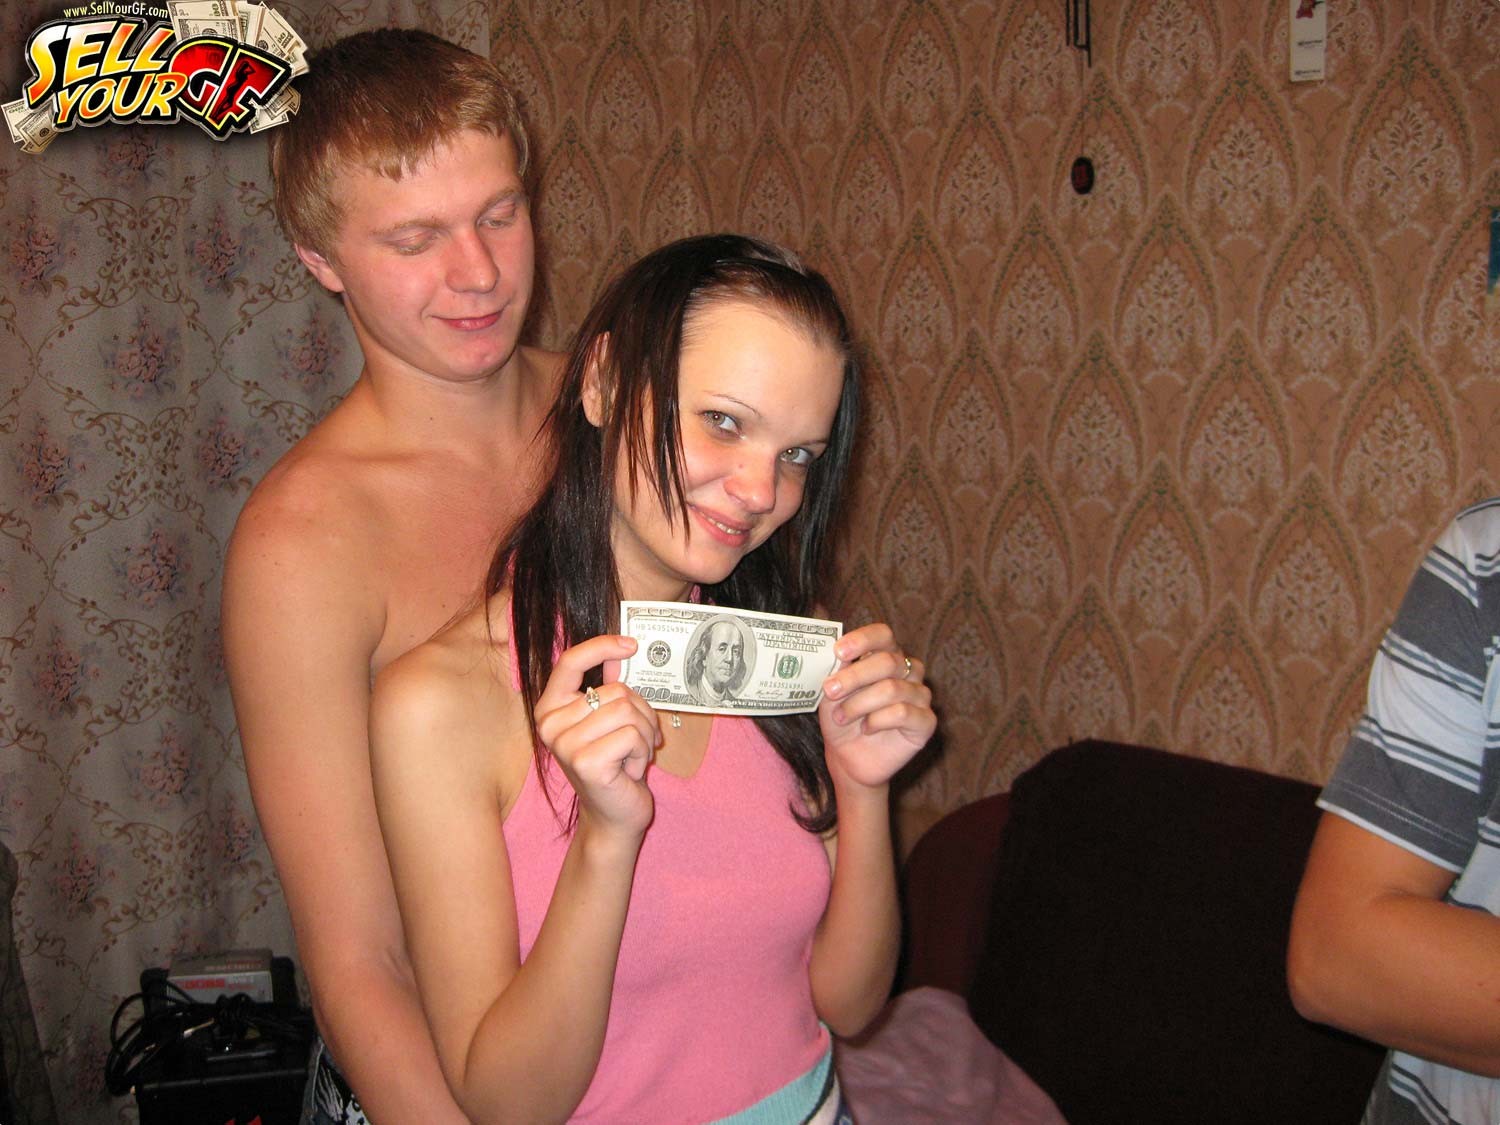 GF having sex with stranger for cash #75900153